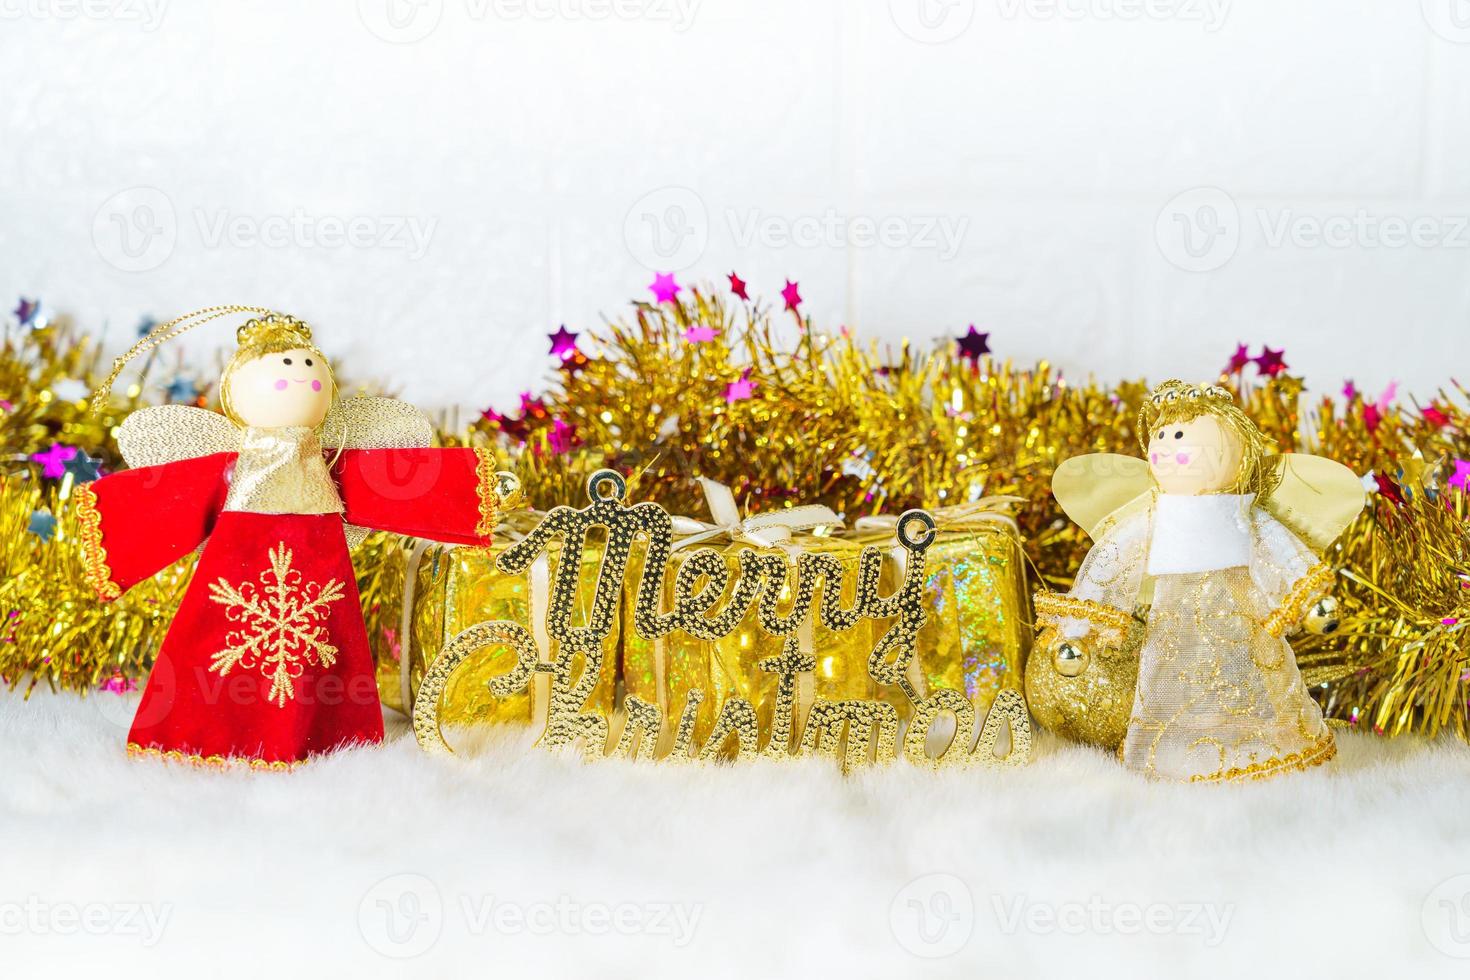 Weihnachtspuppe mit Weihnachtsschmuck und Dekorationen foto